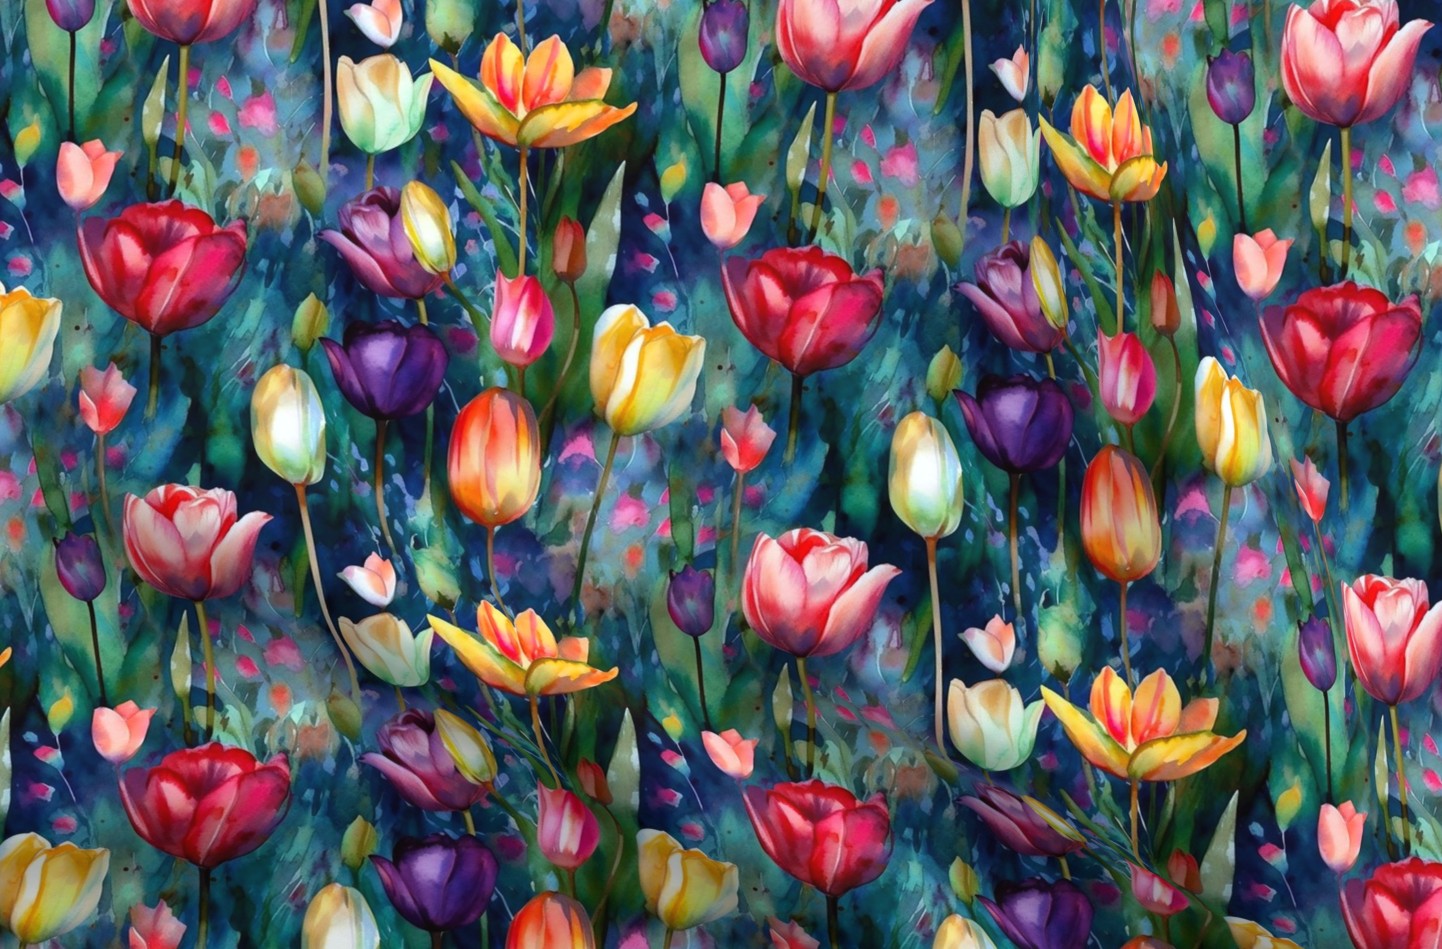 Midnight Sonata Watercolor Tulips Printed Fabric by Studio Ten Design